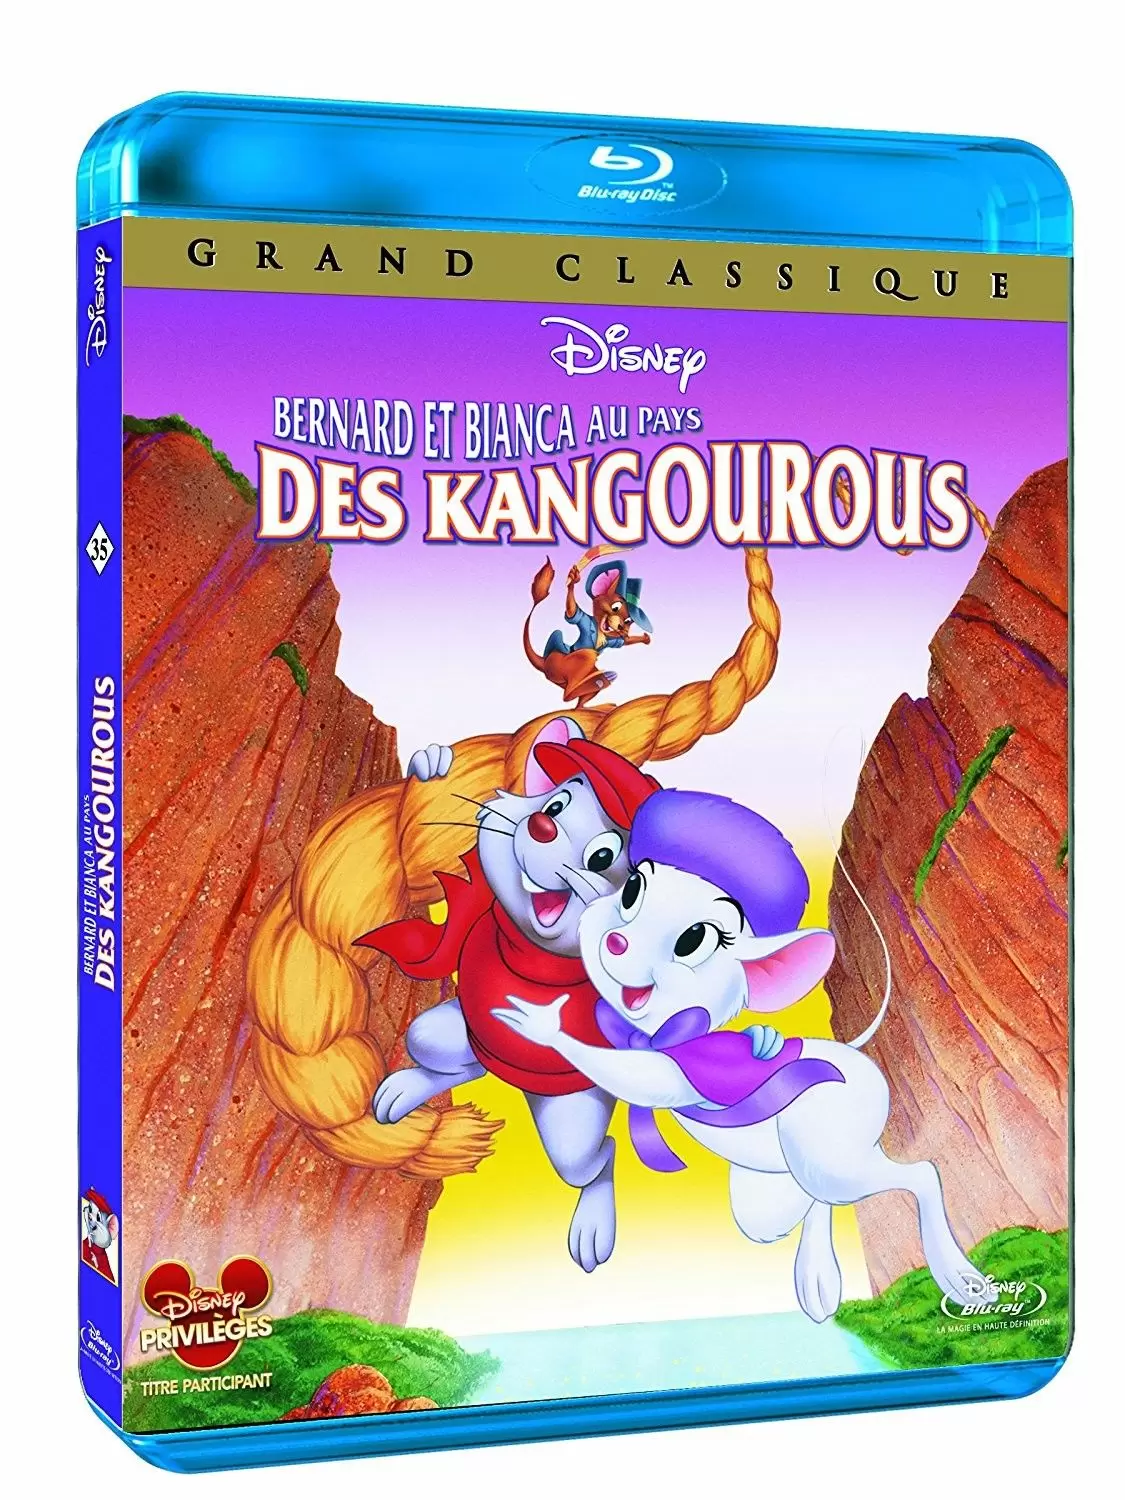 Les grands classiques de Disney en Blu-Ray - Bernard et Bianca au pays des kangourous